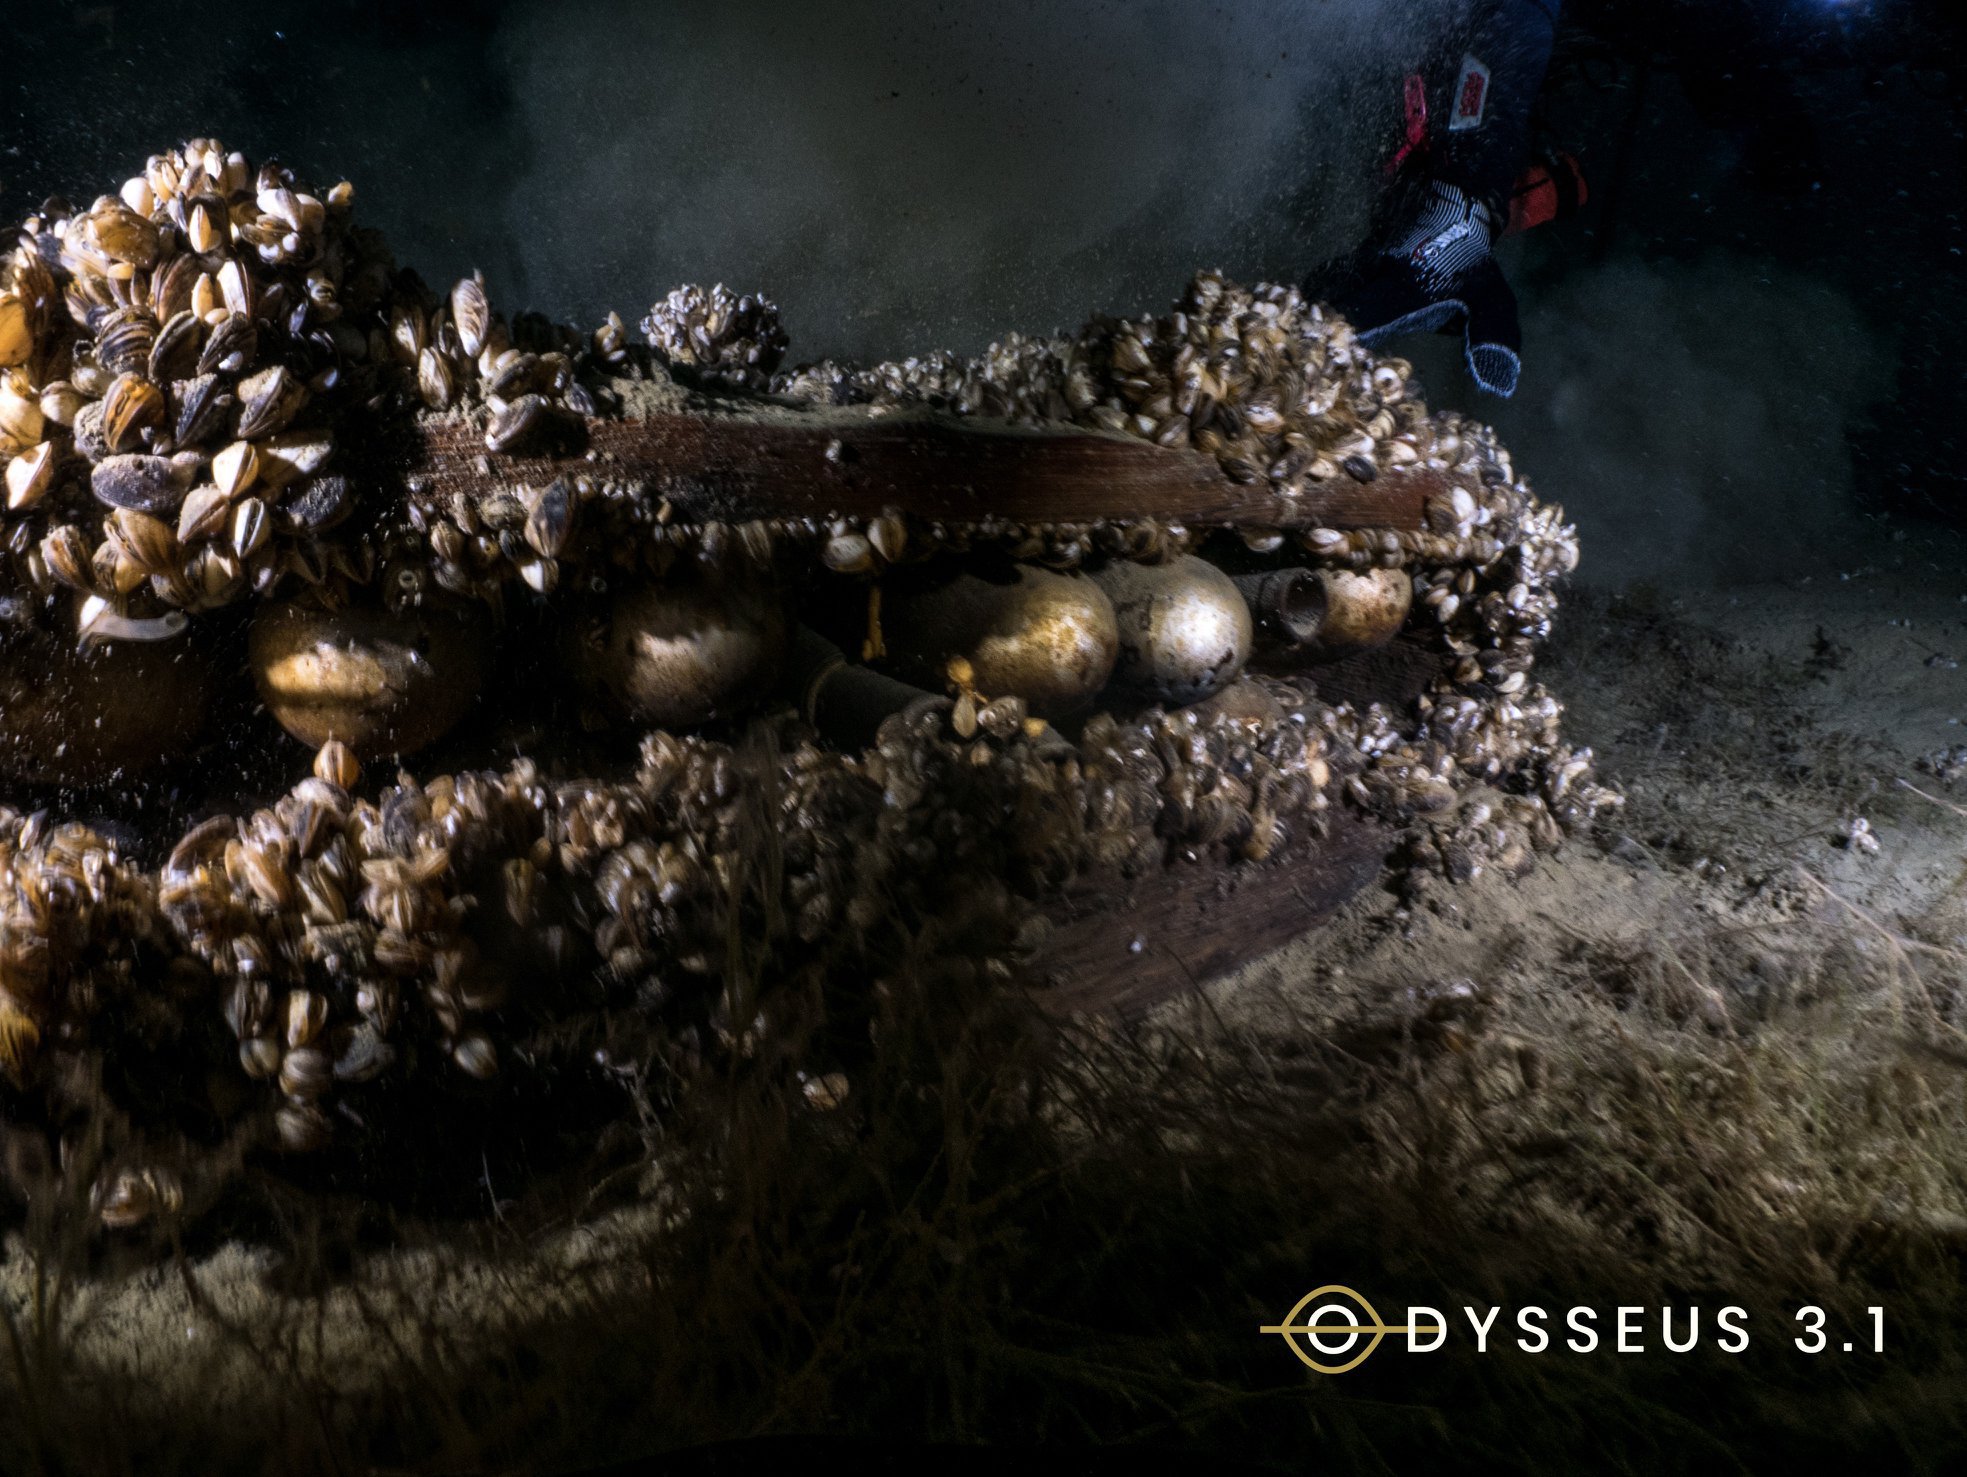 Les plongeurs d'Odysseus 3.1 ont fait une découverte explosive au fond du Léman.